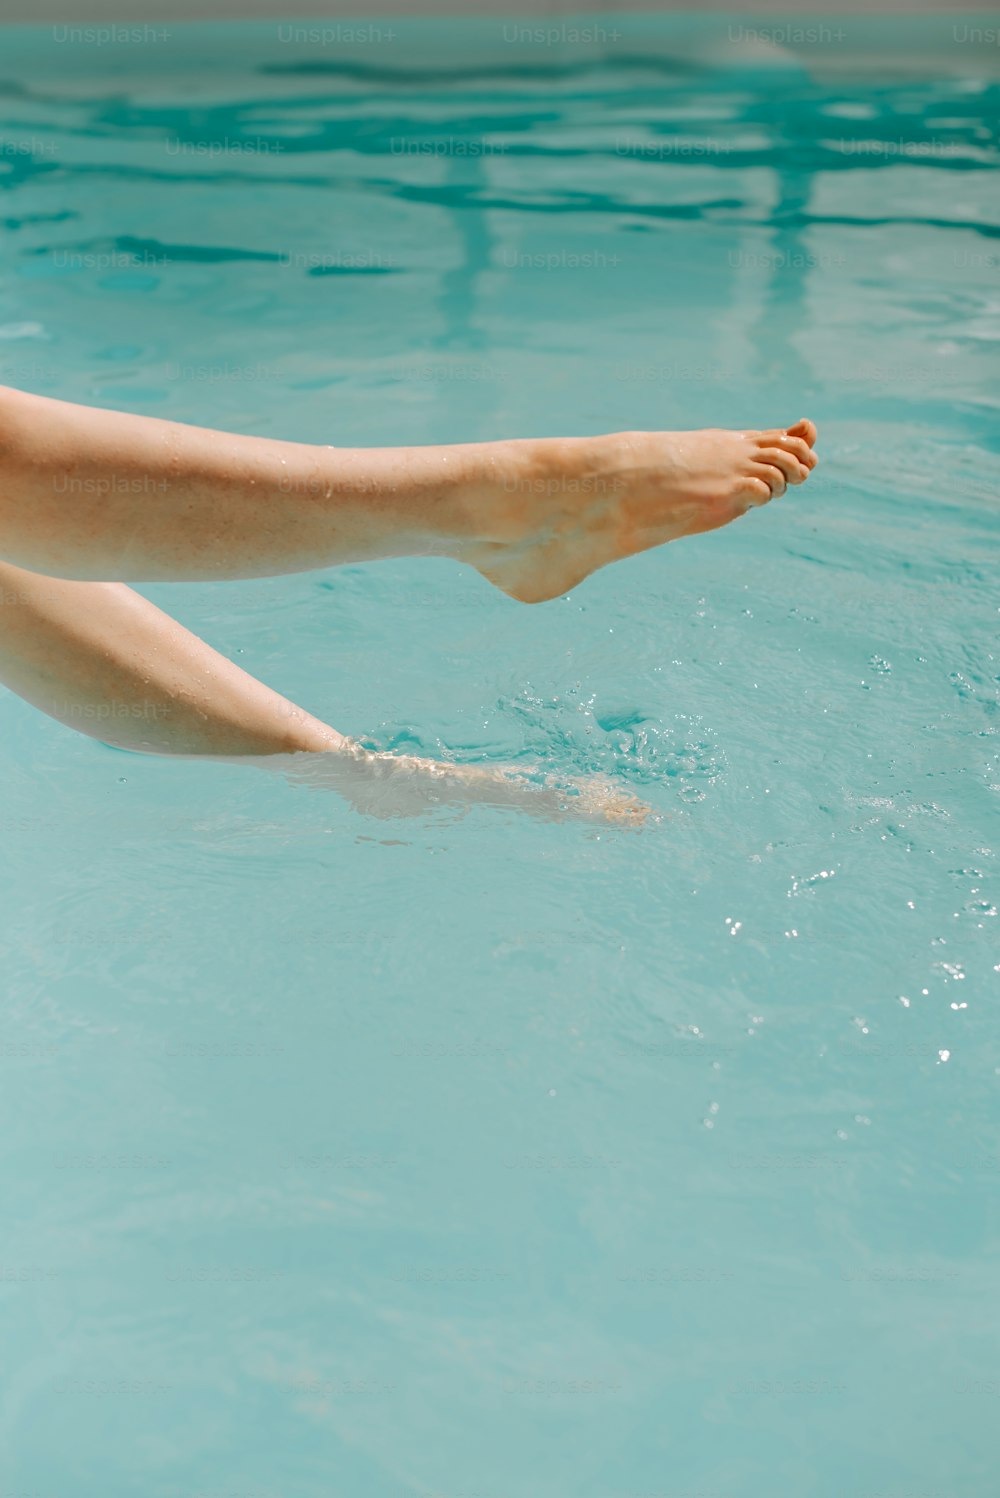 Les pieds nus d’une femme flottant dans une mare d’eau